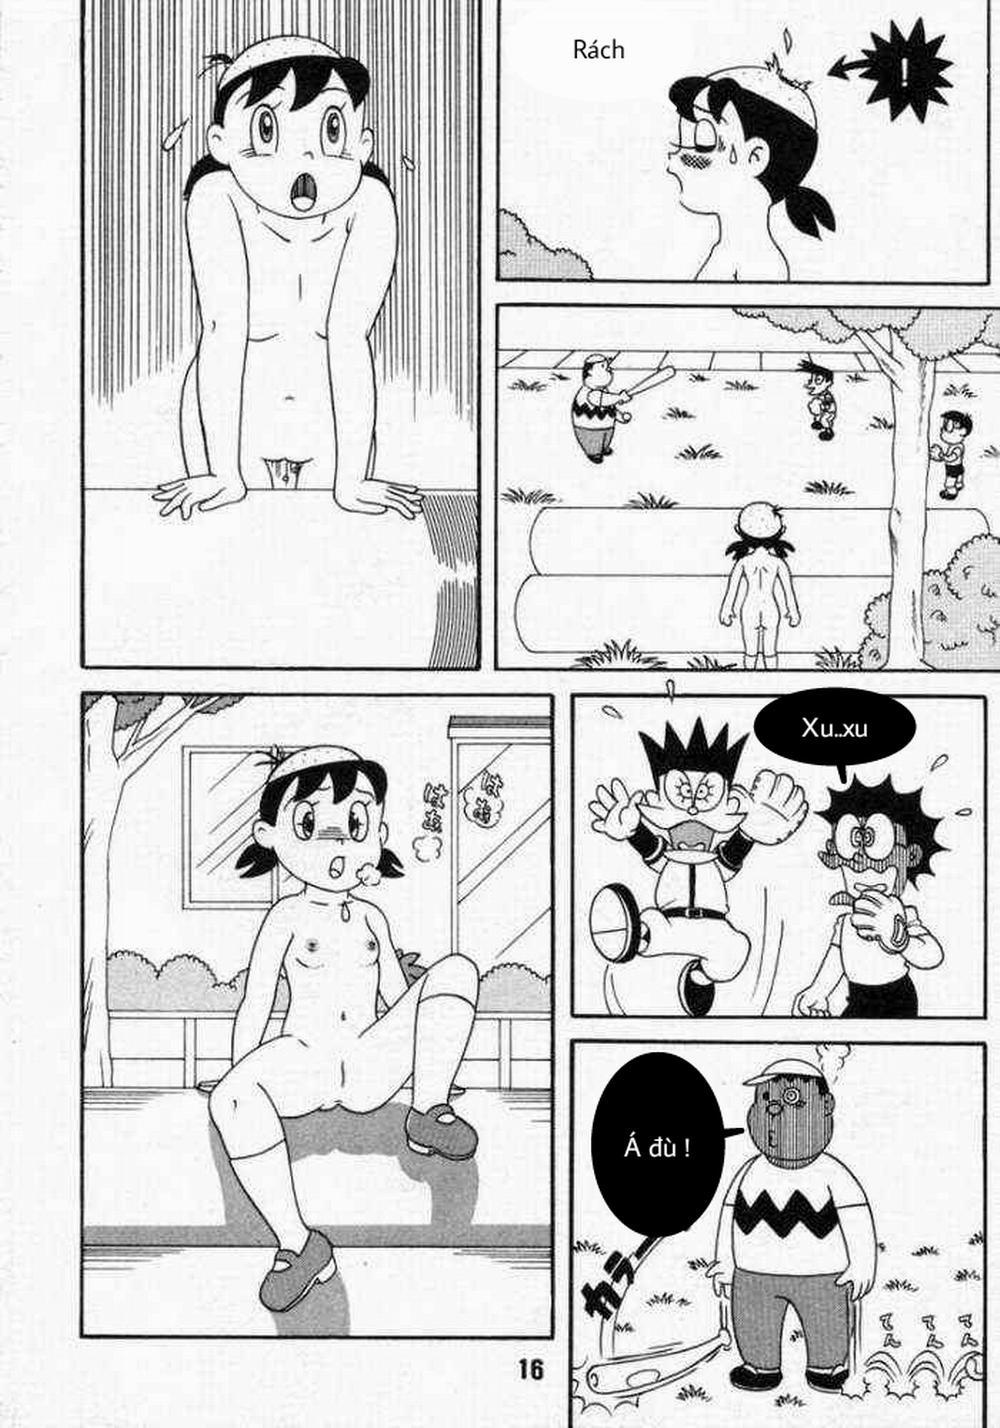 Tuyển Tập Doraemon Doujinshi 18+ Chương 10 Xuka v m t ng h nh Trang 14